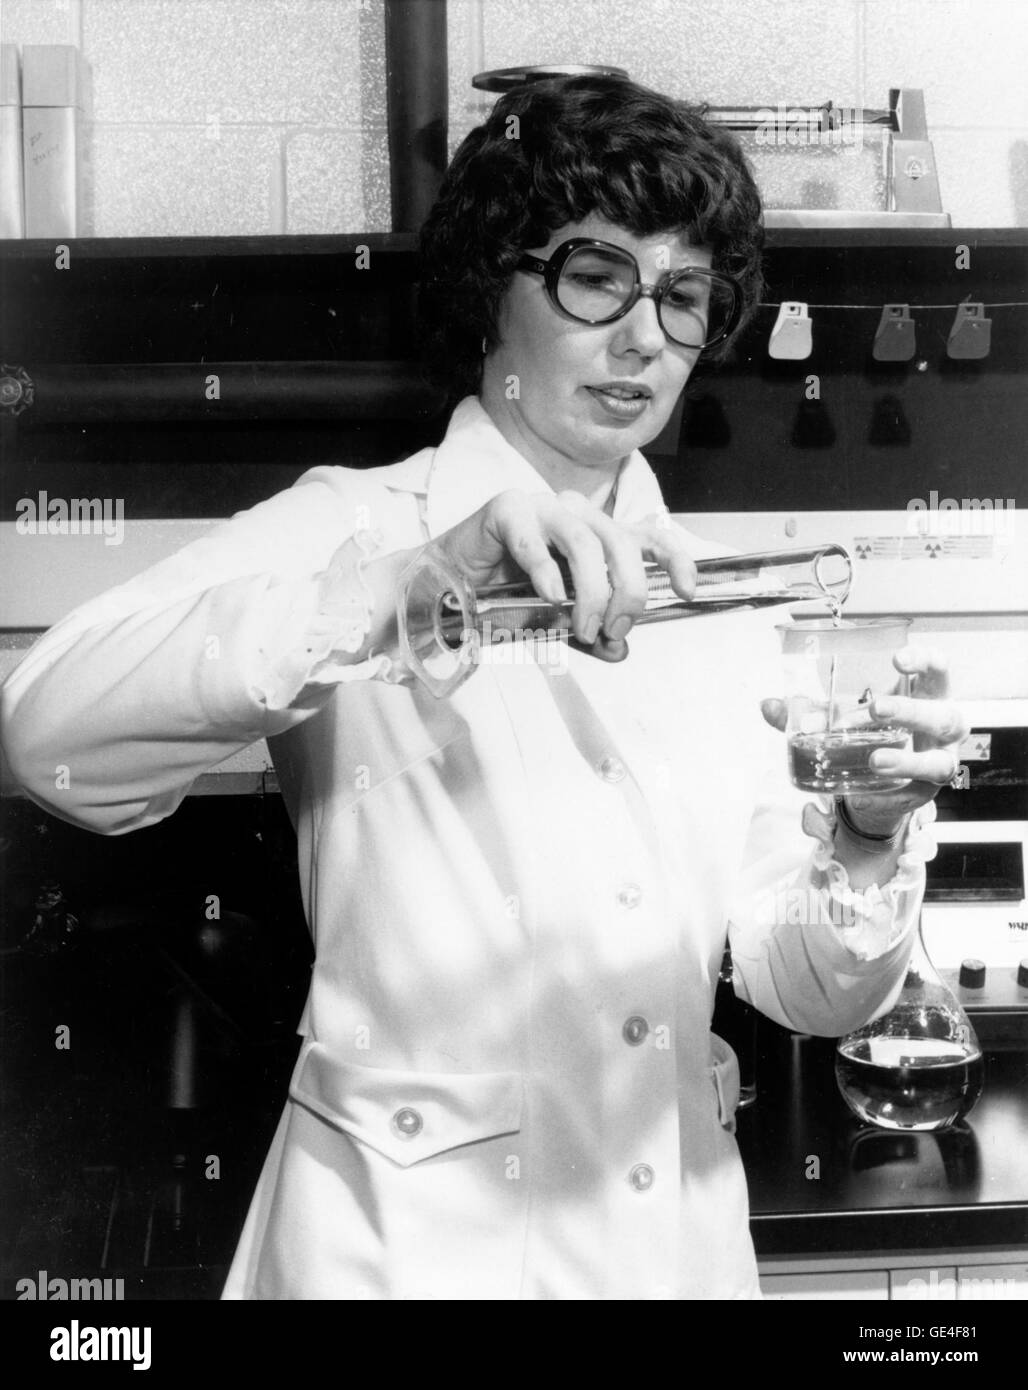 (1978) a engagé la NASA Barbara S. Askins, chimiste à la NASA's Marshall Space Flight Center, Huntsville, Alabama, en 1975 pour trouver une meilleure façon d'élaborer et d'astronomie photos géologiques. En 1978, l'Association pour la promotion des inventions et innovations l'a nommée l'inventeur de l'Année National pour son invention d'un processus qui a restauré détails pour les négatifs sous-exposée qui serait autrement inutile. En 1978, Barbara Askins breveté une méthode d'amélioration de la photos à l'aide de matériaux radioactifs. Le processus a été un tel succès que ses utilisations ont été étendues au-delà des chercheurs de la NASA à l'improv Banque D'Images